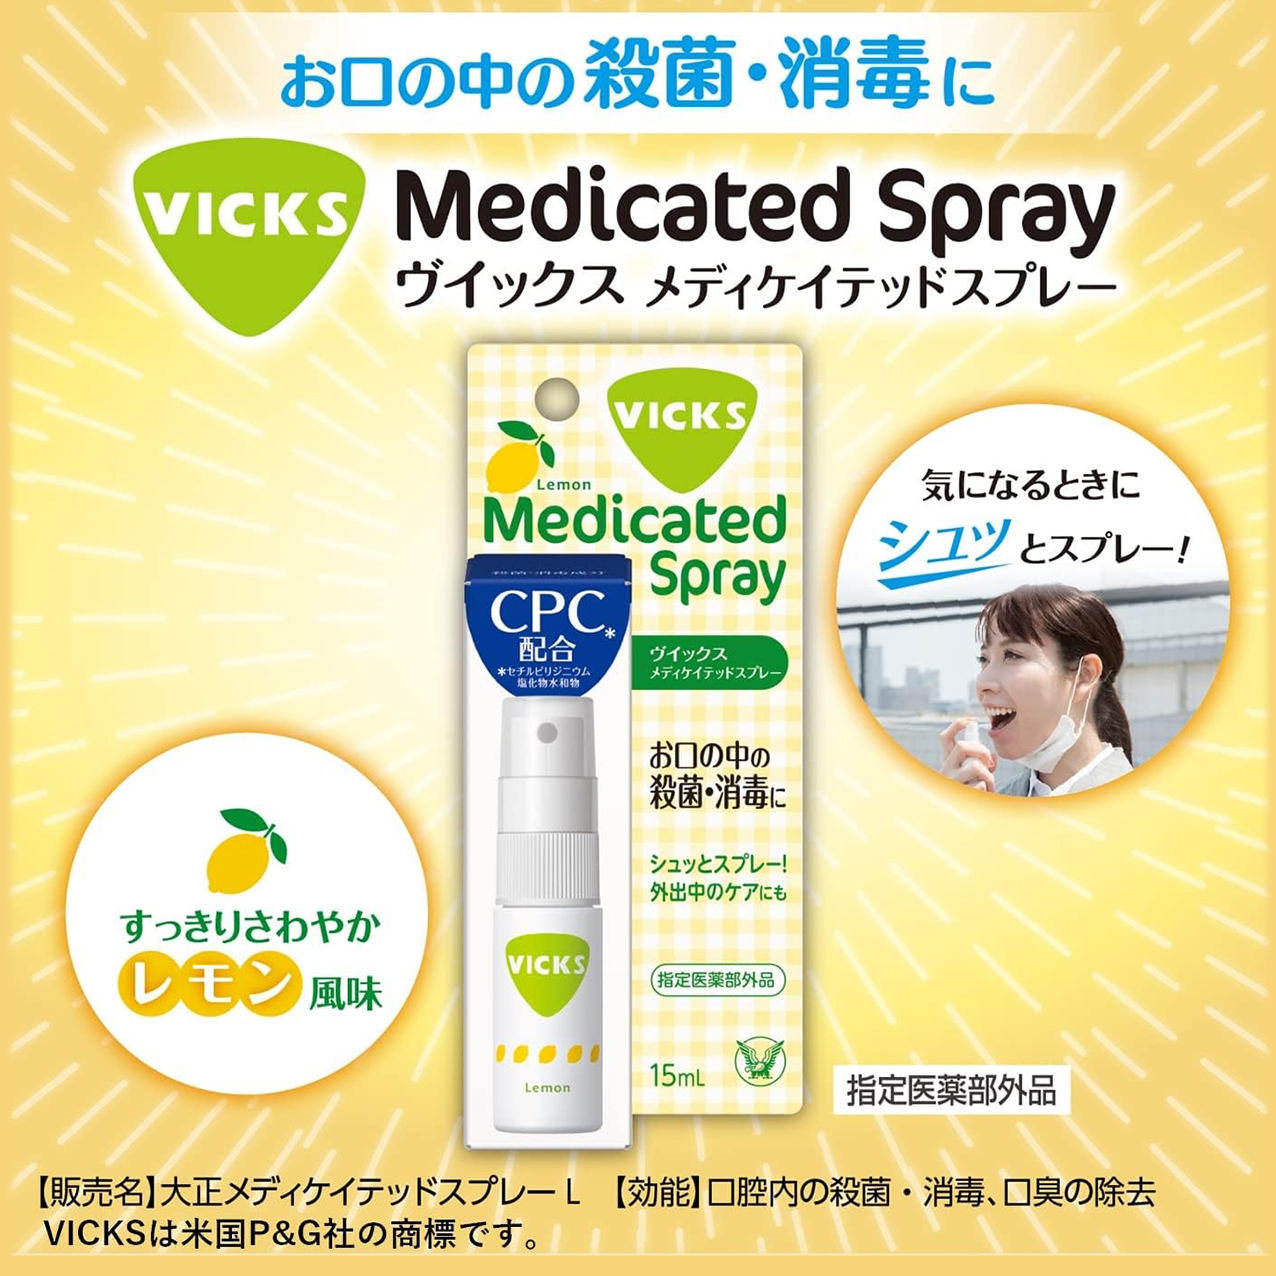 VICKS Medicated Spray